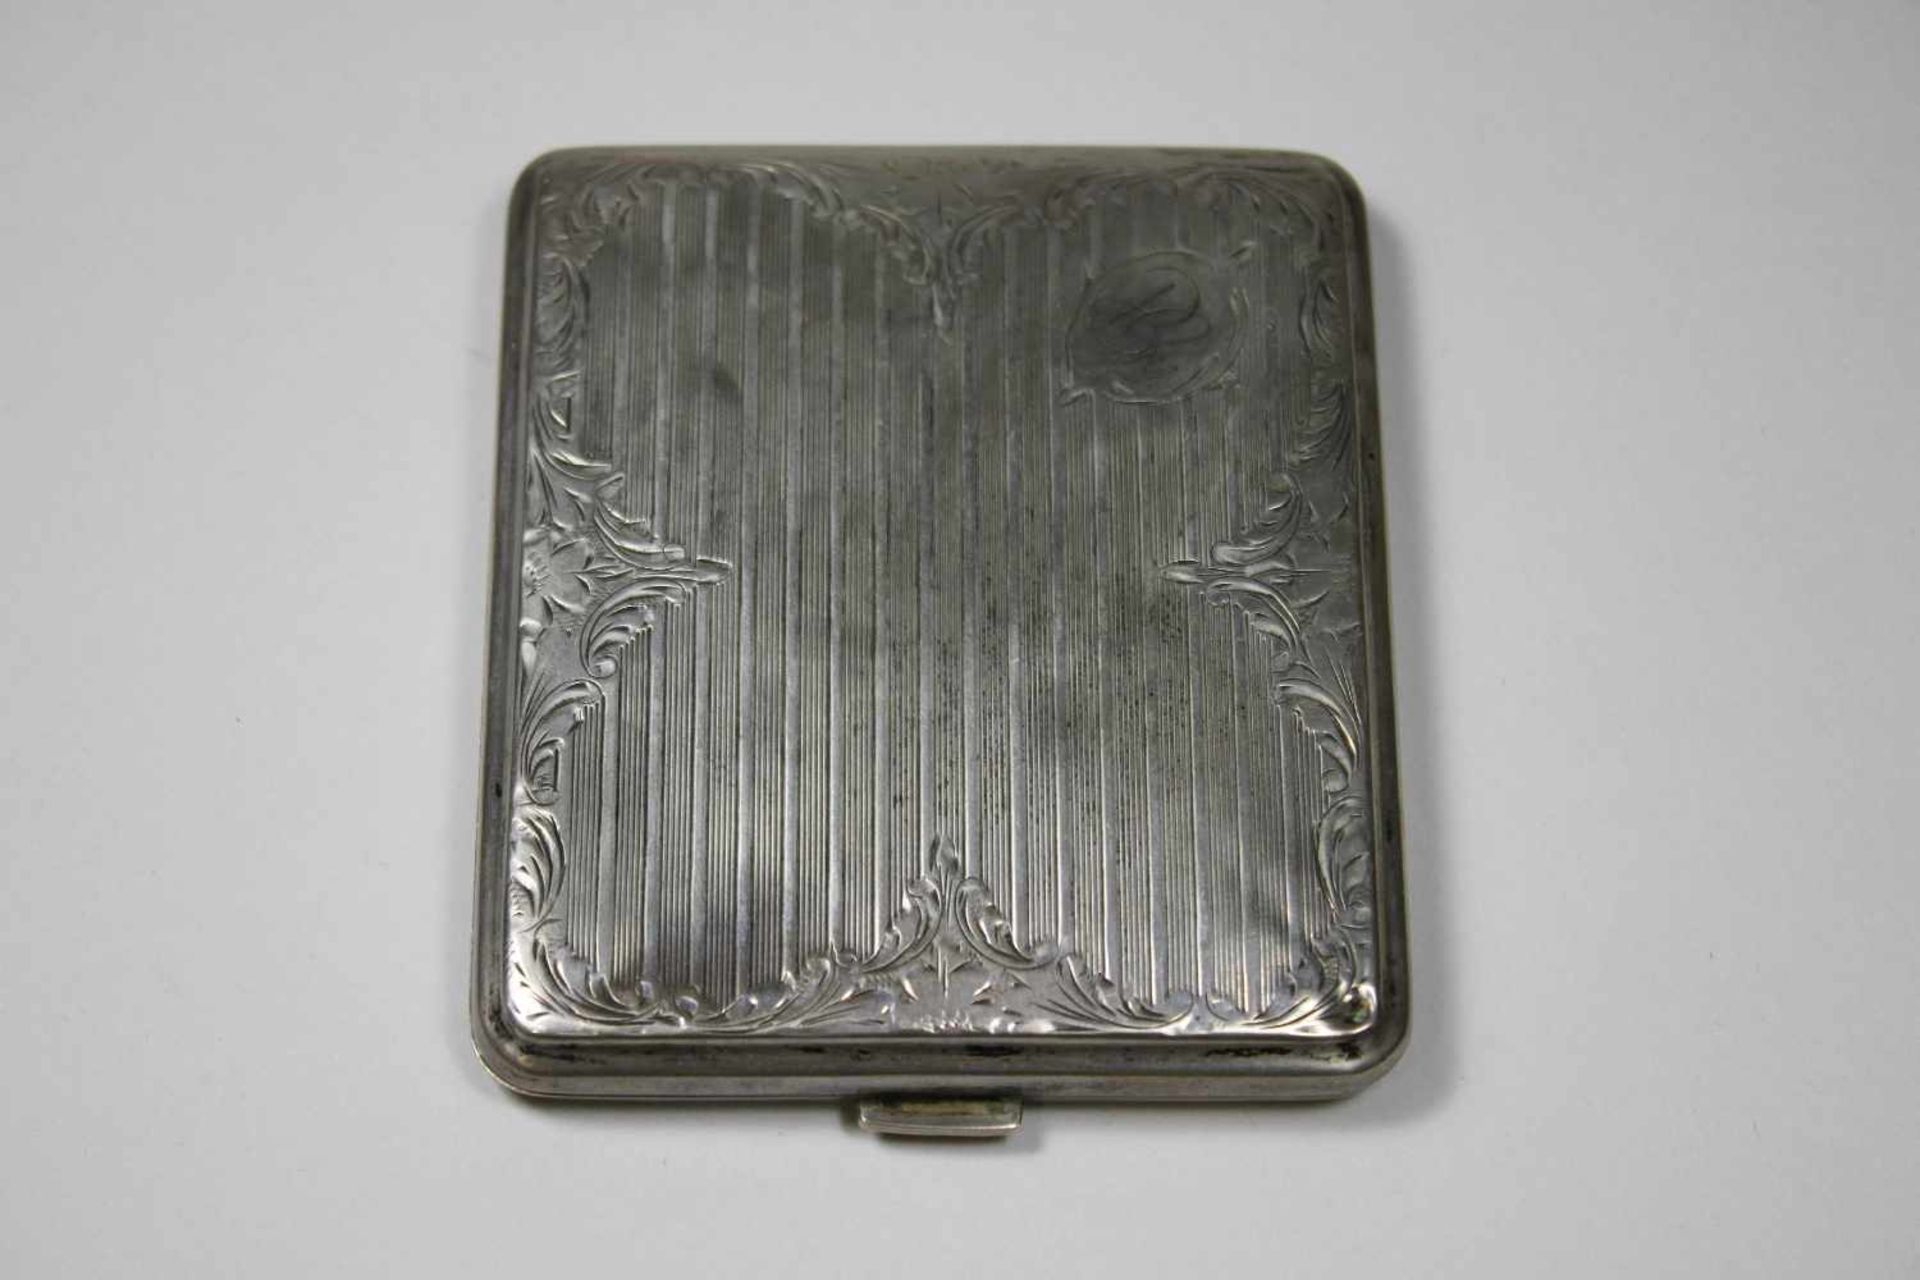 Zigarrettenetui, Silber punziert, Gewicht ca. 75 gr., Maße: 9 x 8 x 1 cm.- - -27.00 % buyer's